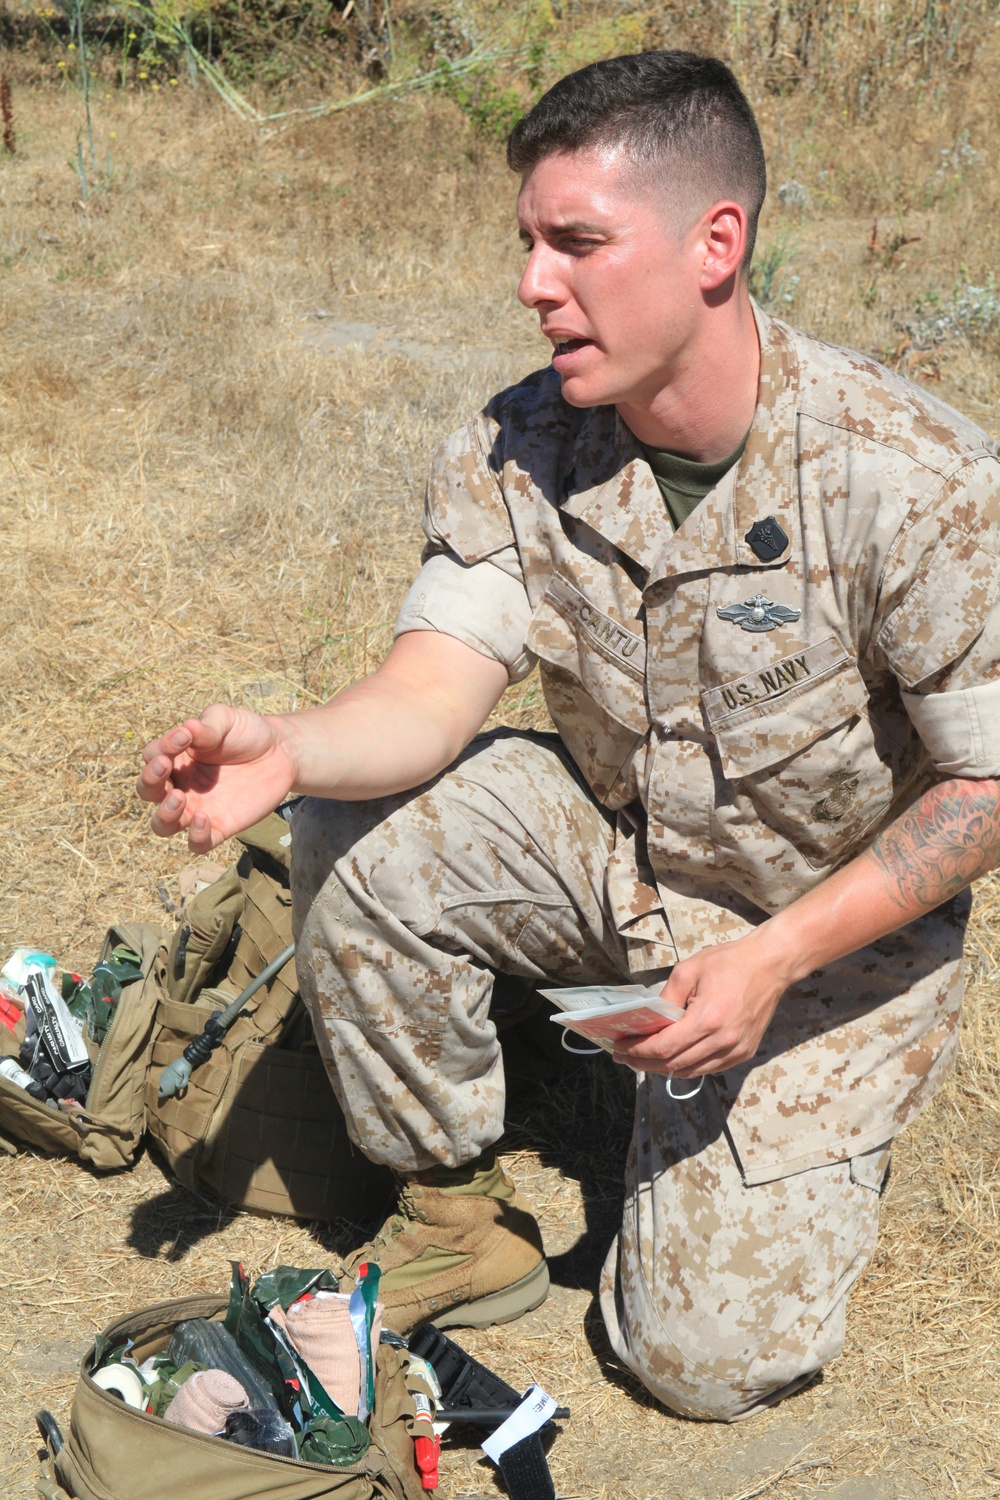 Corpsman treatment extends beyond the battlefield